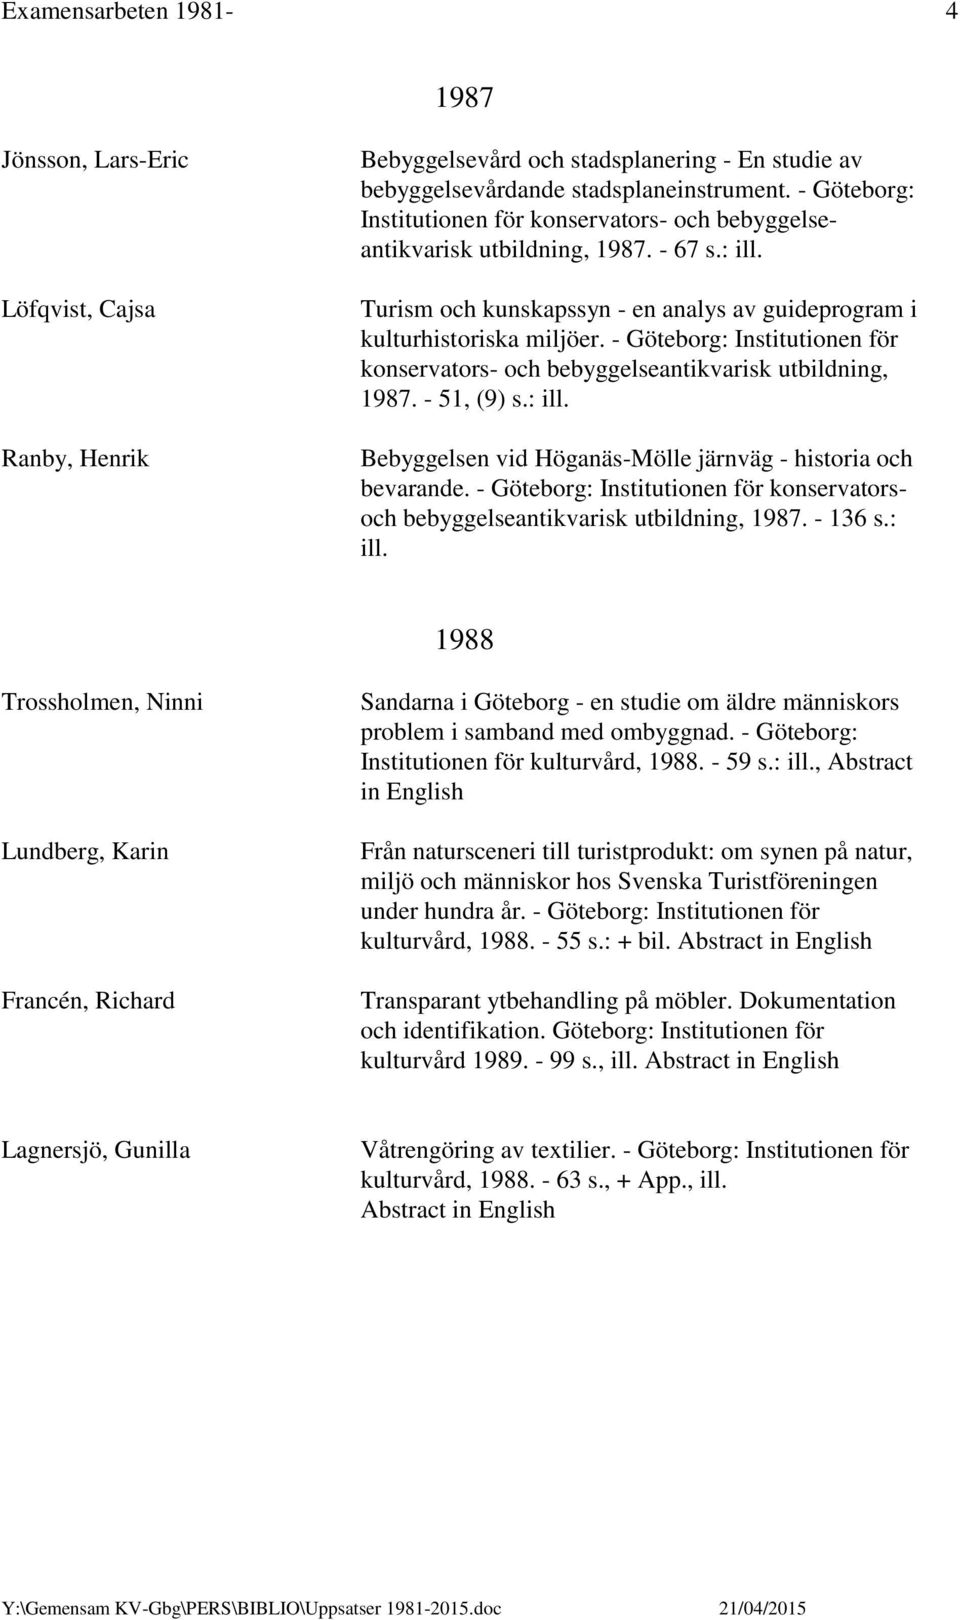 - Göteborg: Institutionen för konservators- och bebyggelseantikvarisk utbildning, 1987. - 51, (9) s.: ill. Bebyggelsen vid Höganäs-Mölle järnväg - historia och bevarande.